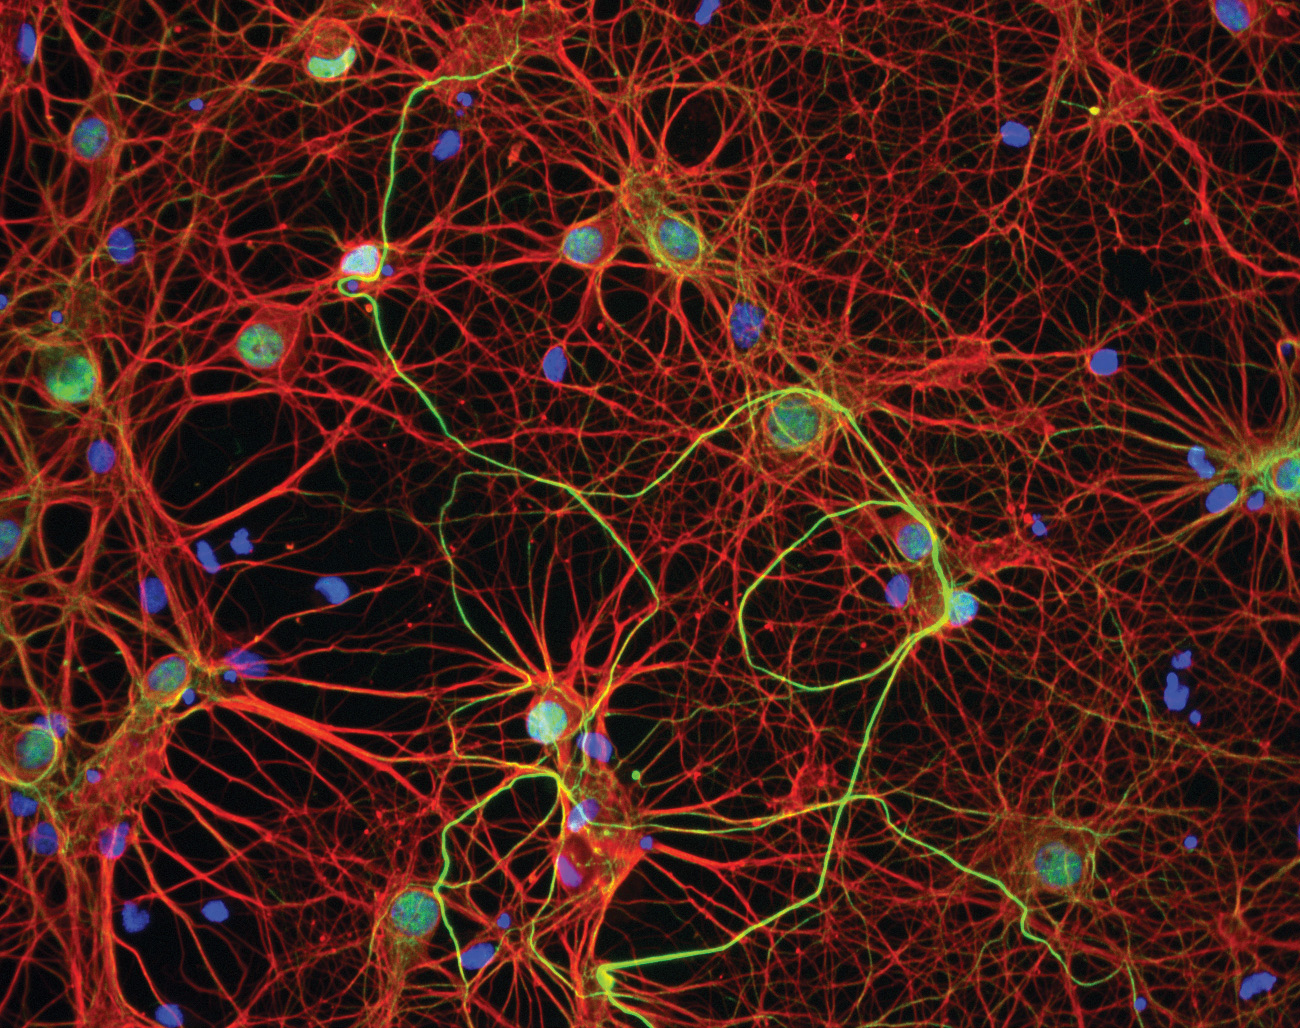 Résultat de recherche d'images pour "cancer cells invading nervous system;"